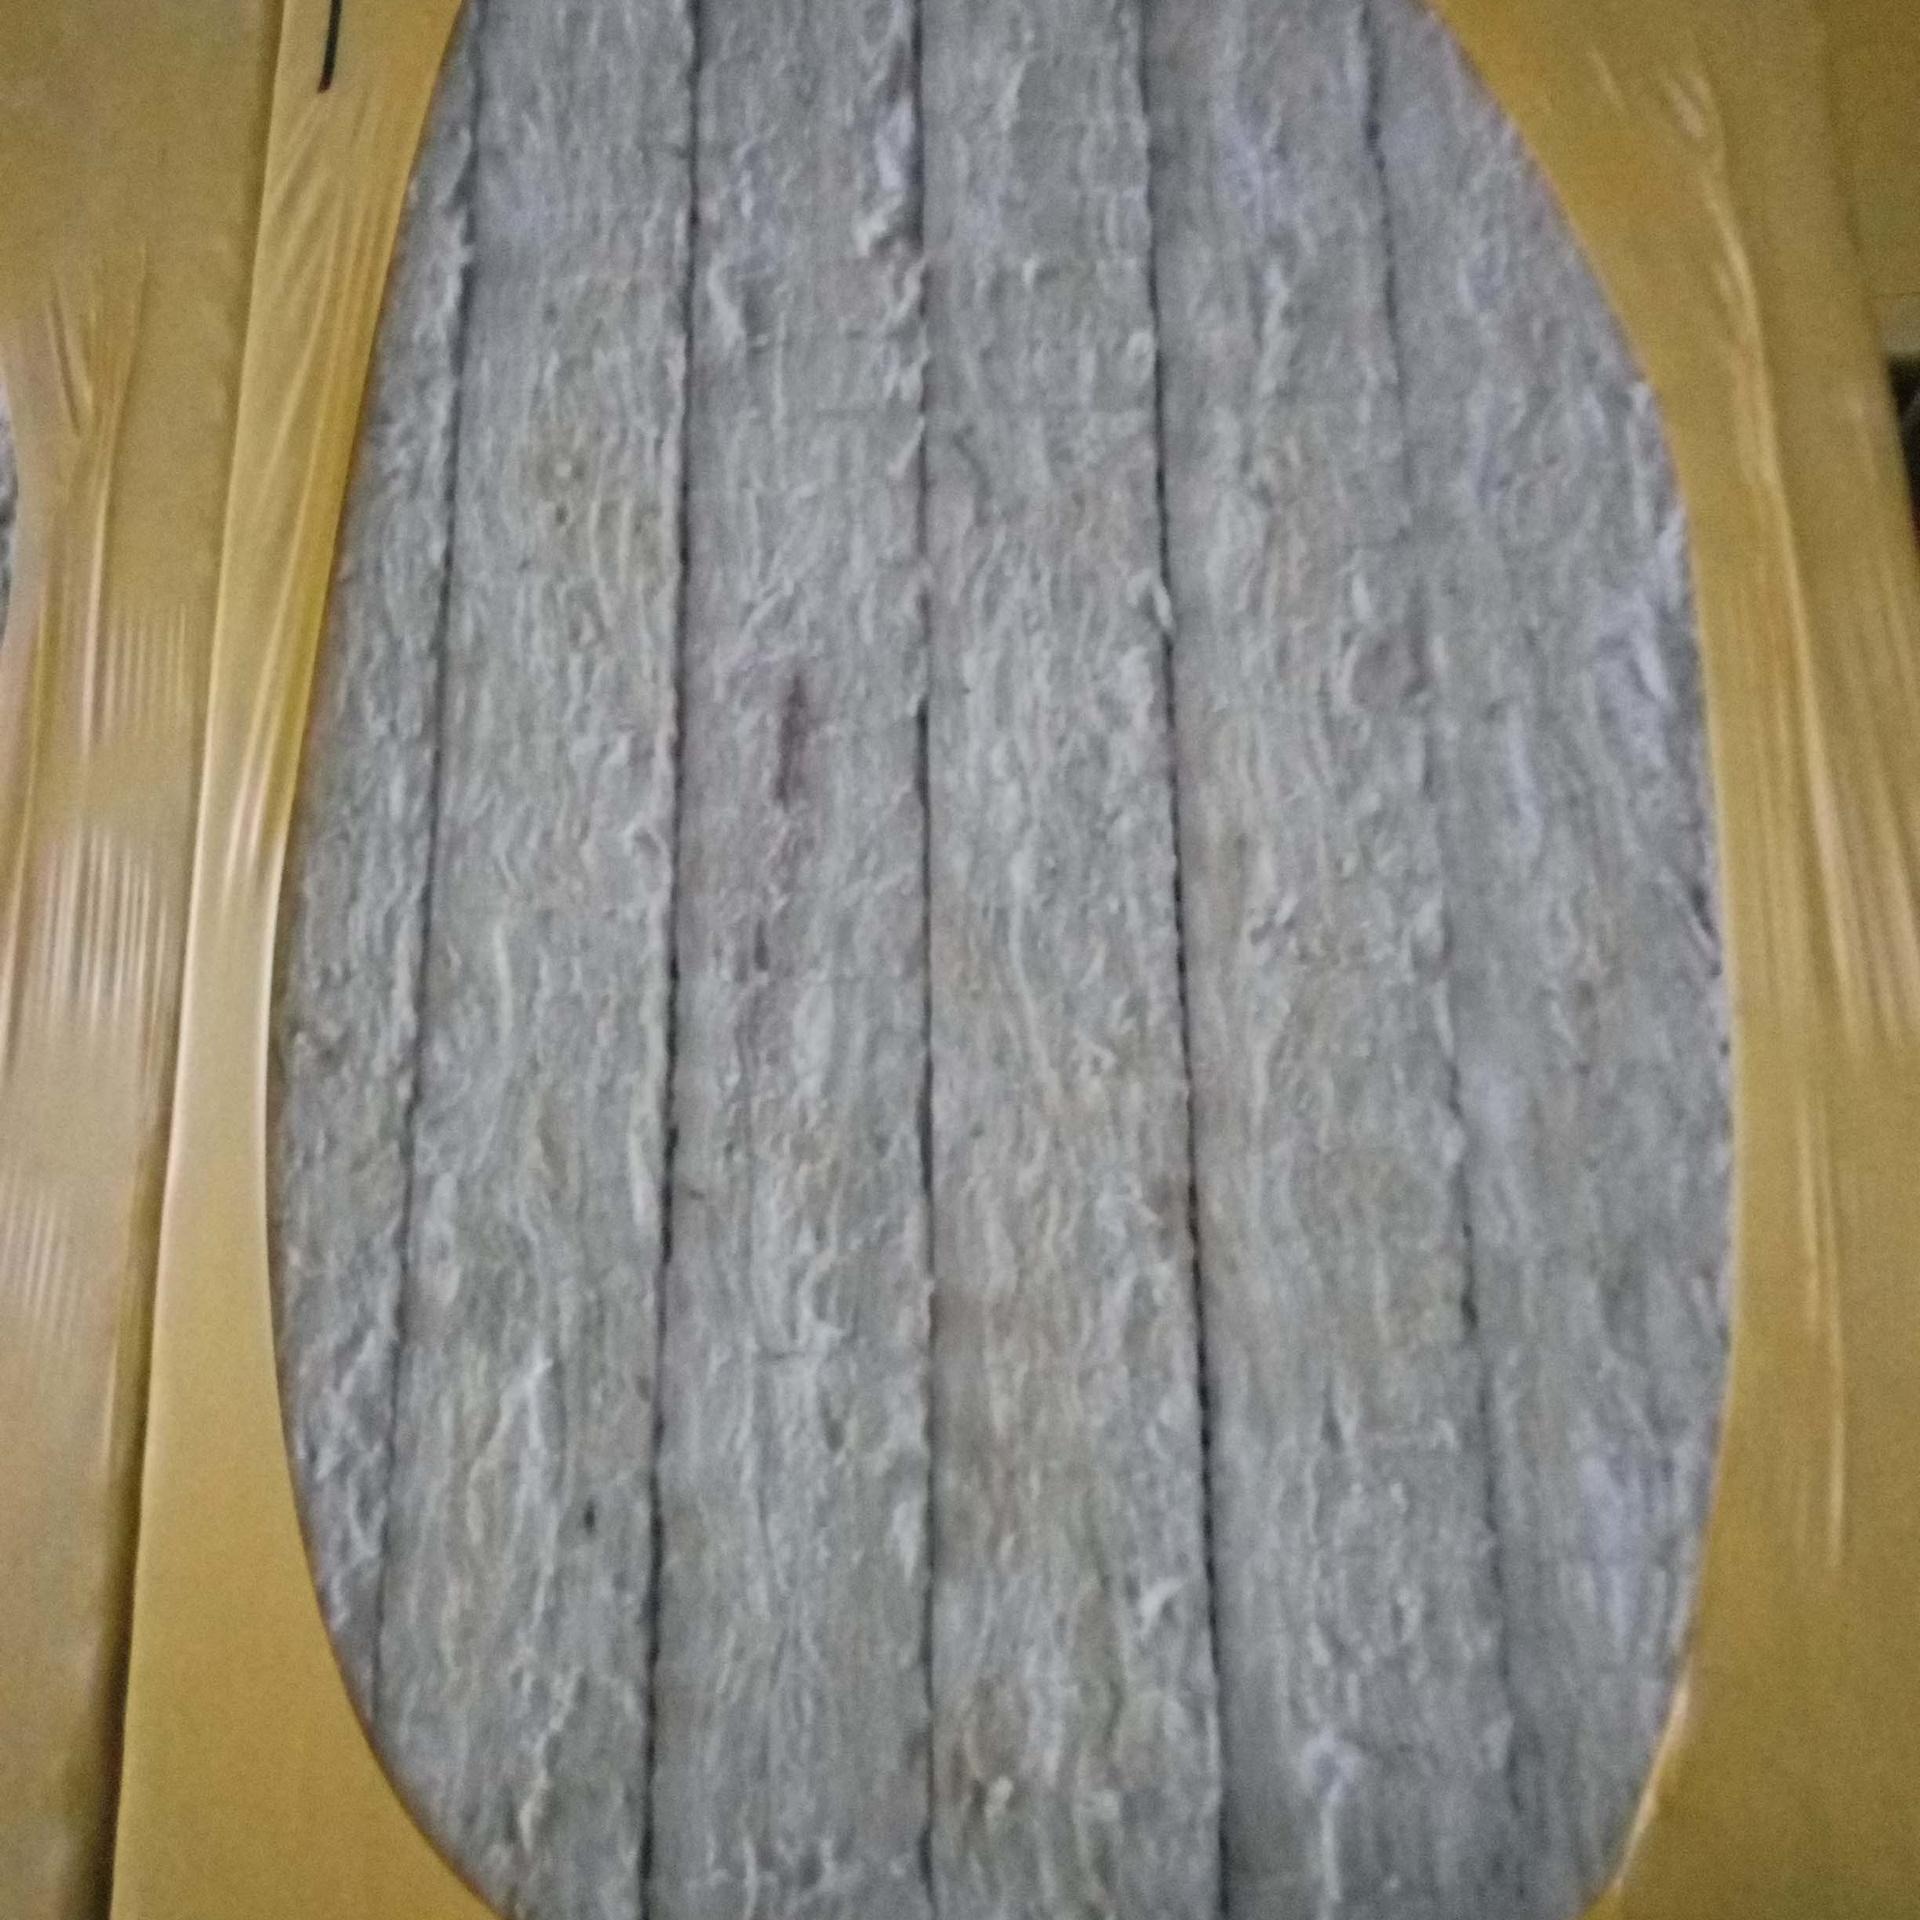 外墙保温专用岩棉保温板信息   岩棉防火保温板型号   屋面岩棉板生产销售   防火岩棉板厂家报价